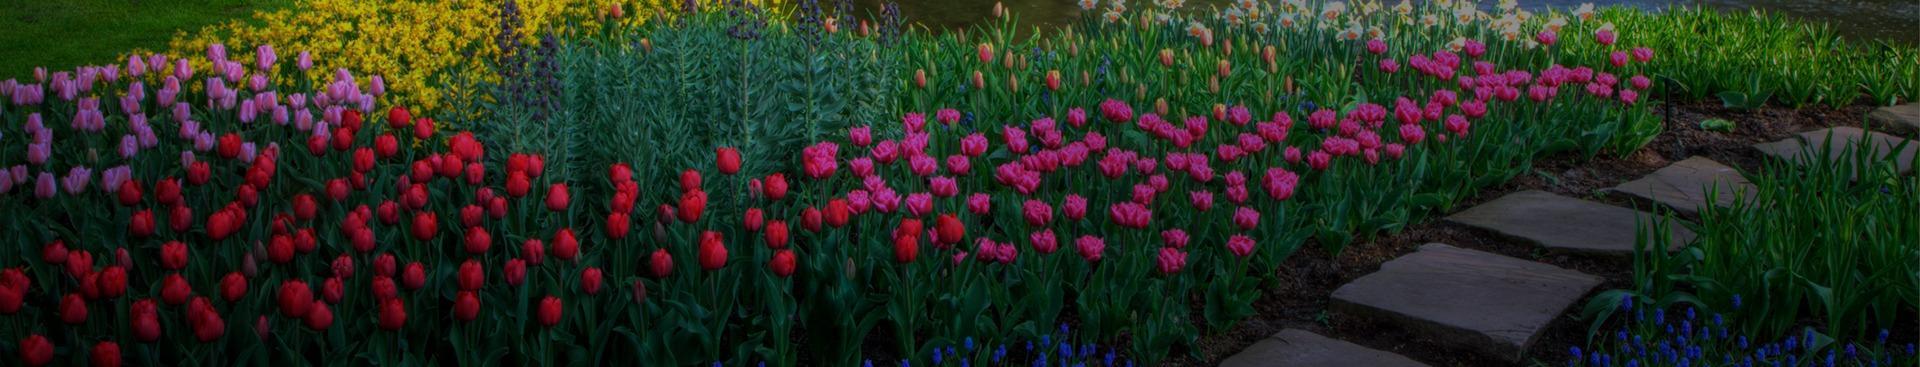 Slajd 3 - Ogródek z kolorowymi kwiatami